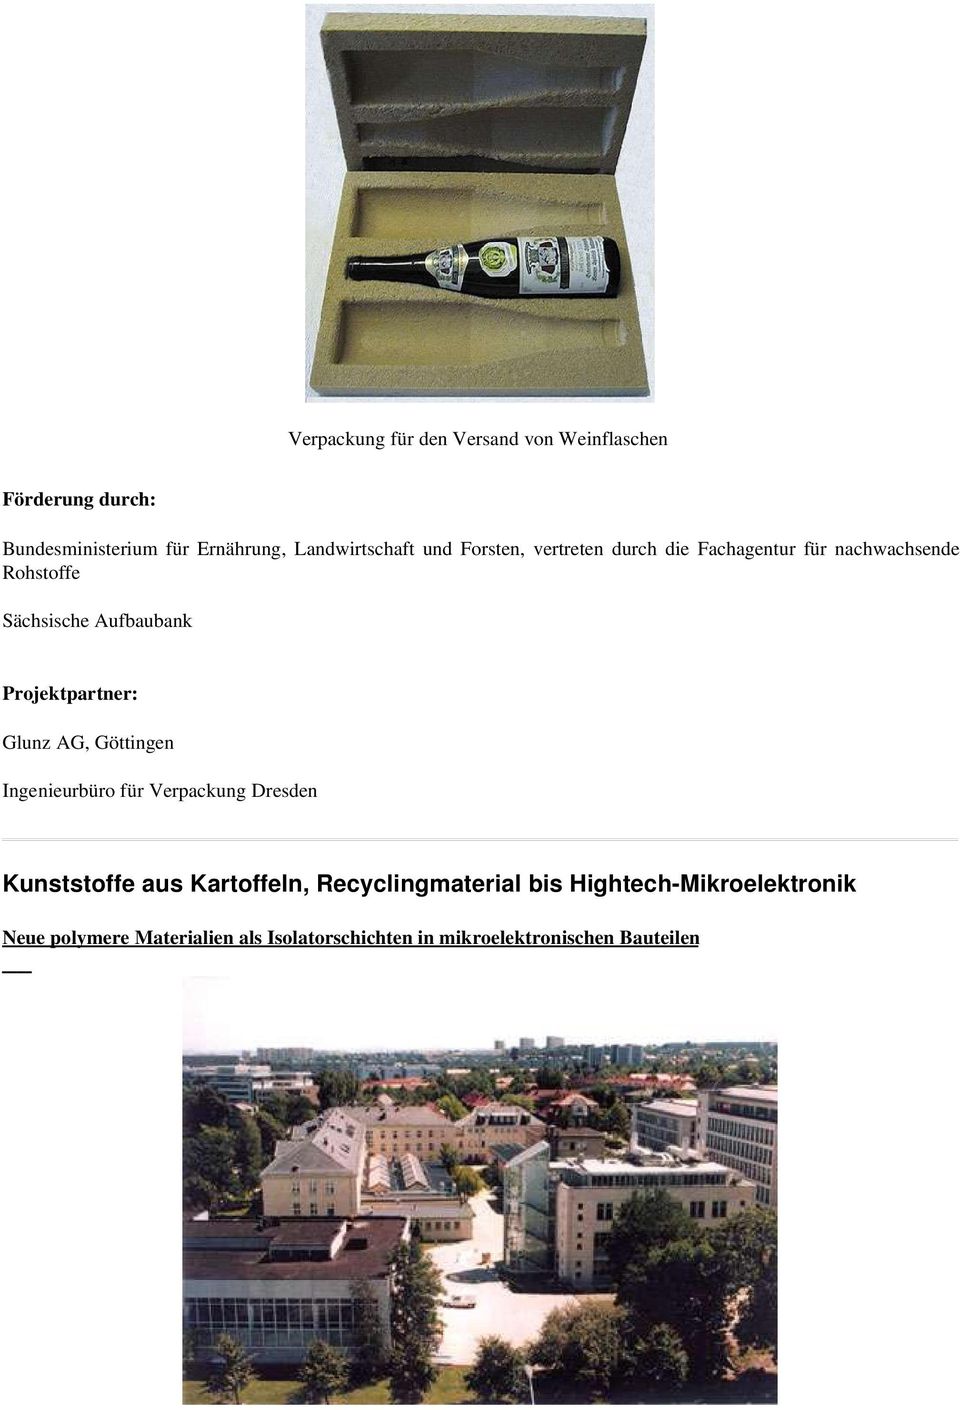 Aufbaubank Projektpartner: Glunz AG, Göttingen Ingenieurbüro für Verpackung Dresden Kunststoffe aus